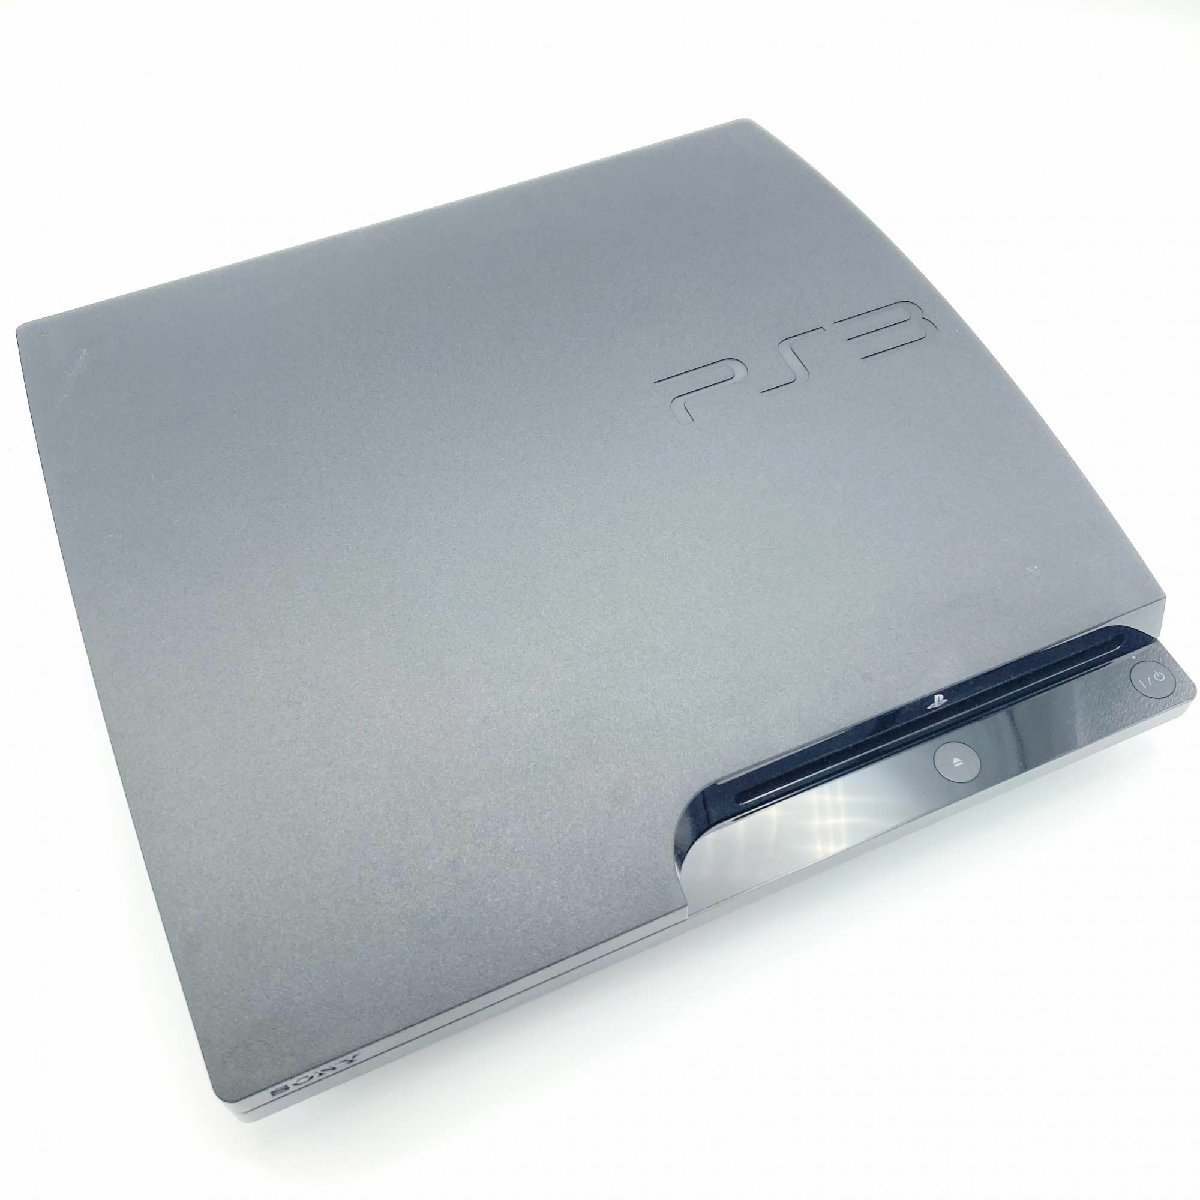 中古 PlayStation 3 (250GB) チャコール・ブラック (CECH-2100B)